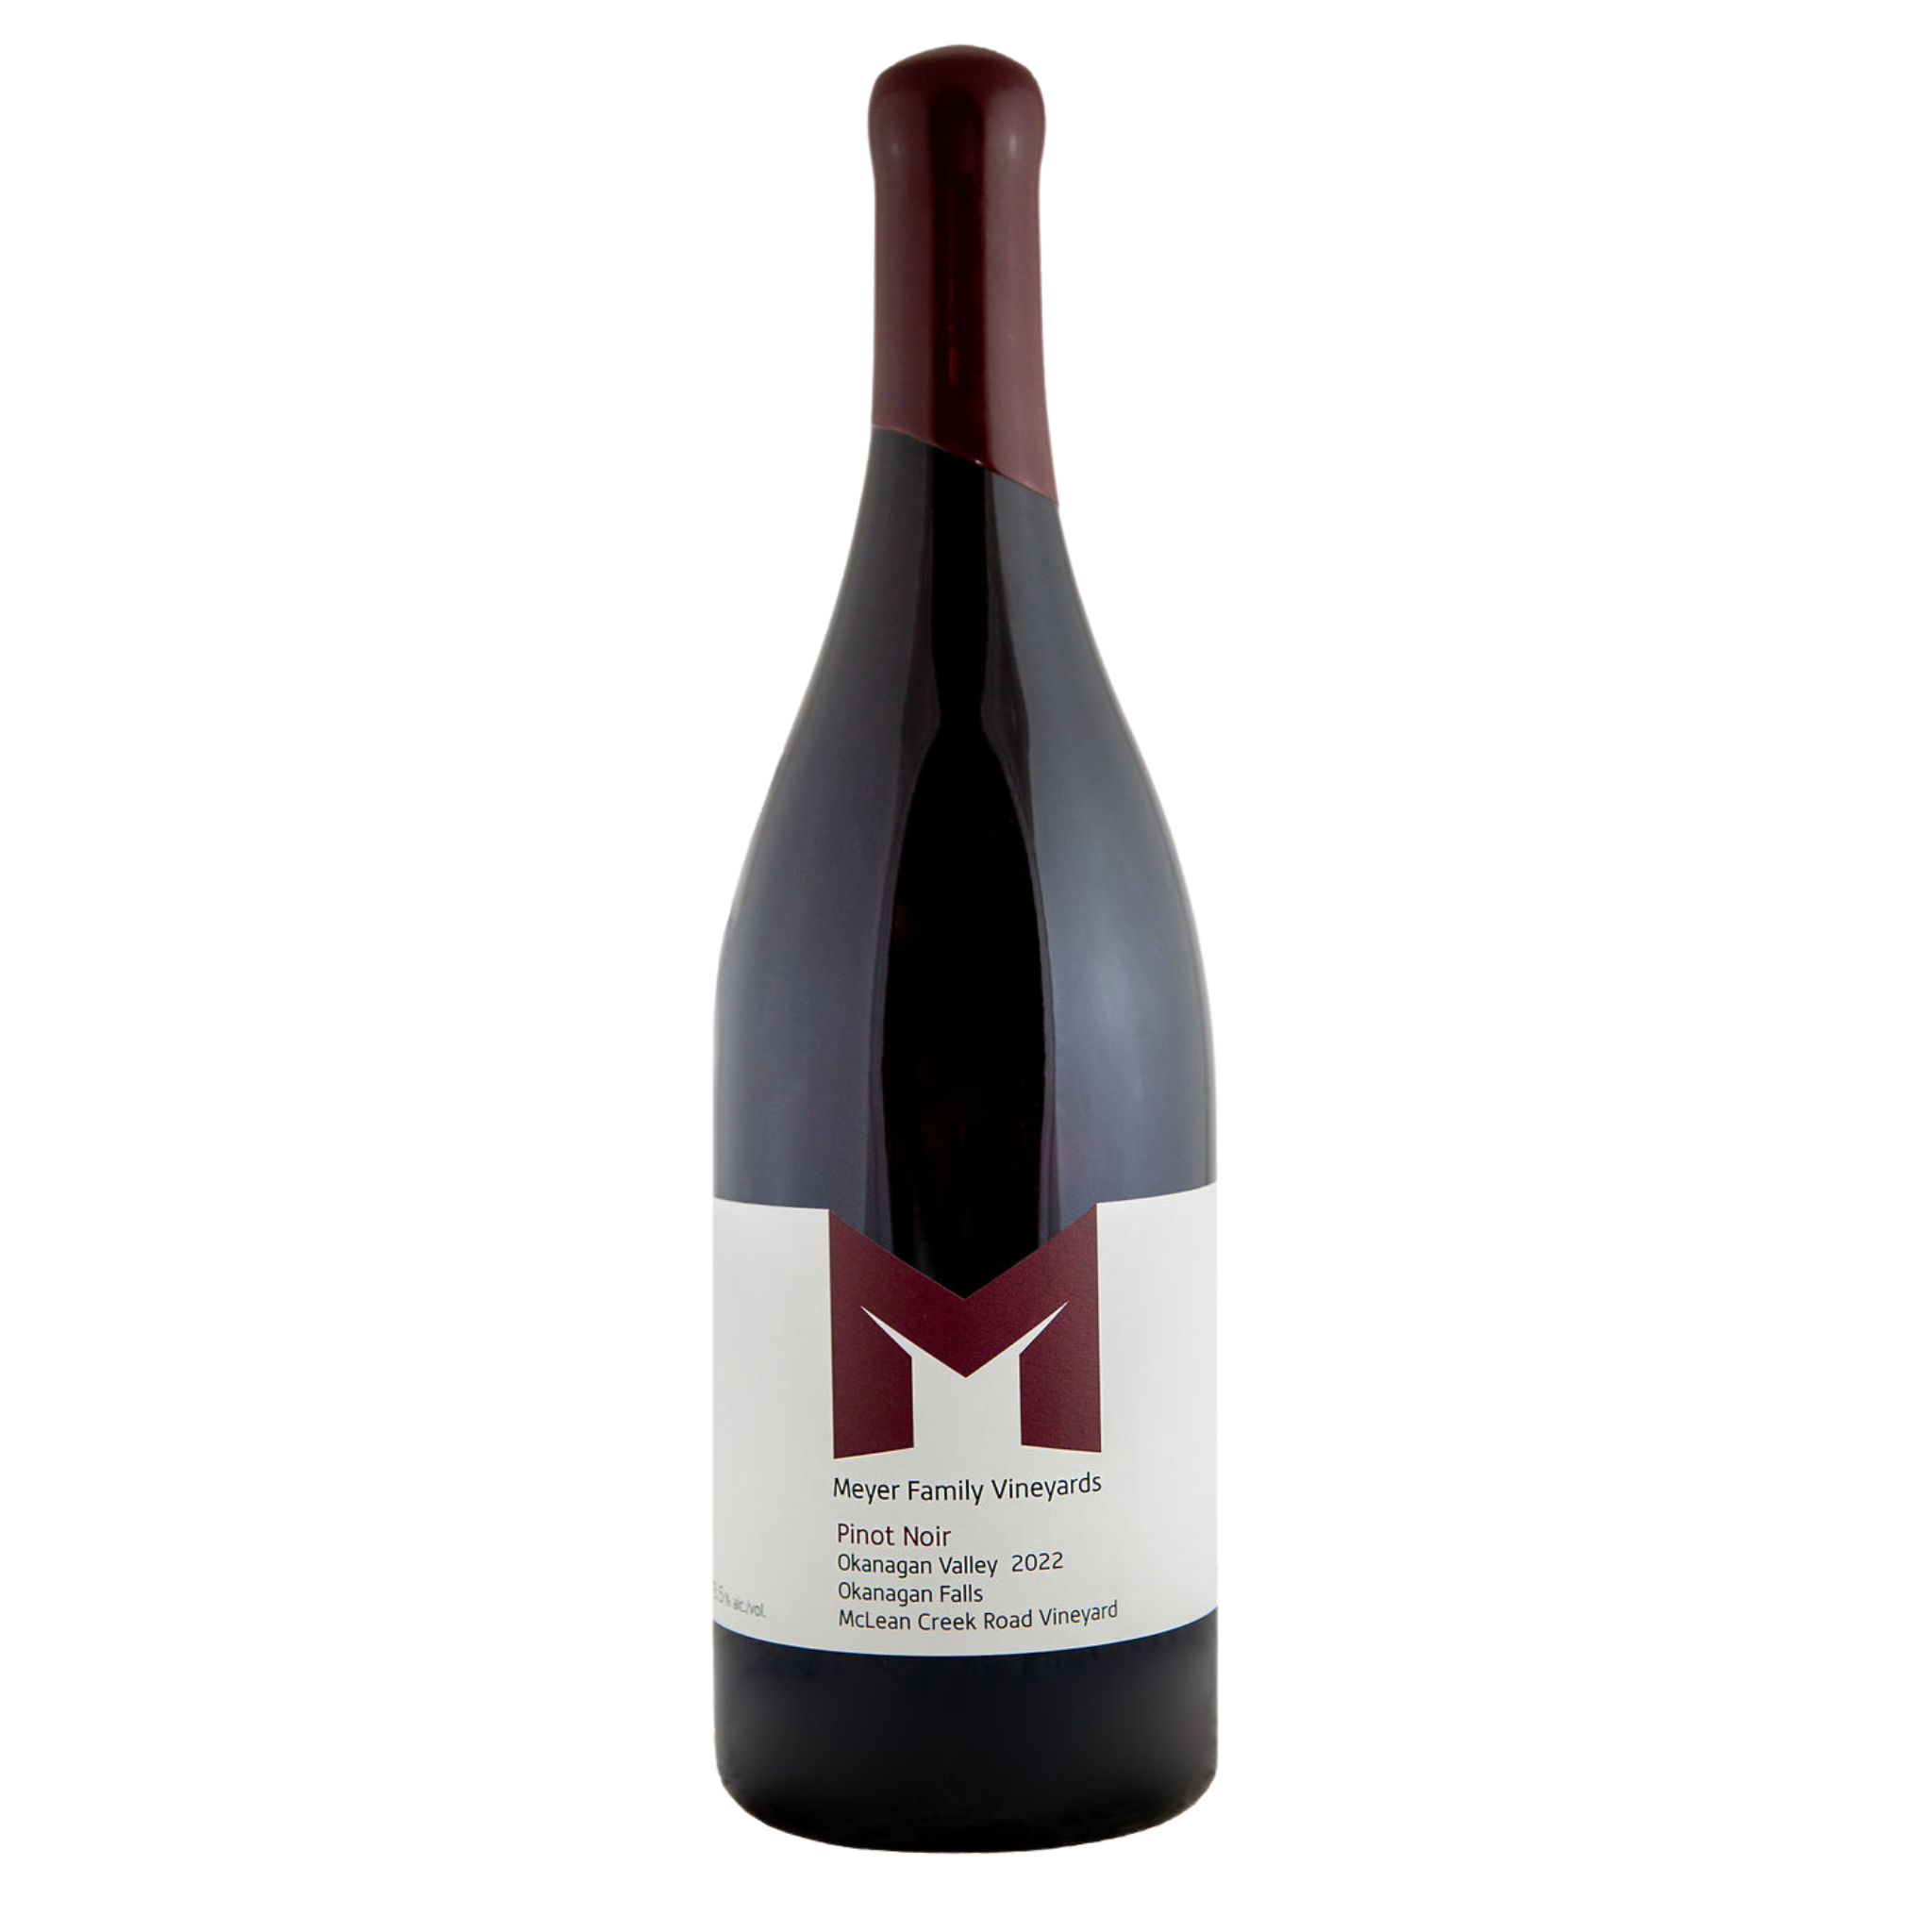 3L bottle of McLean Creek Rd Pinot Noir 2022